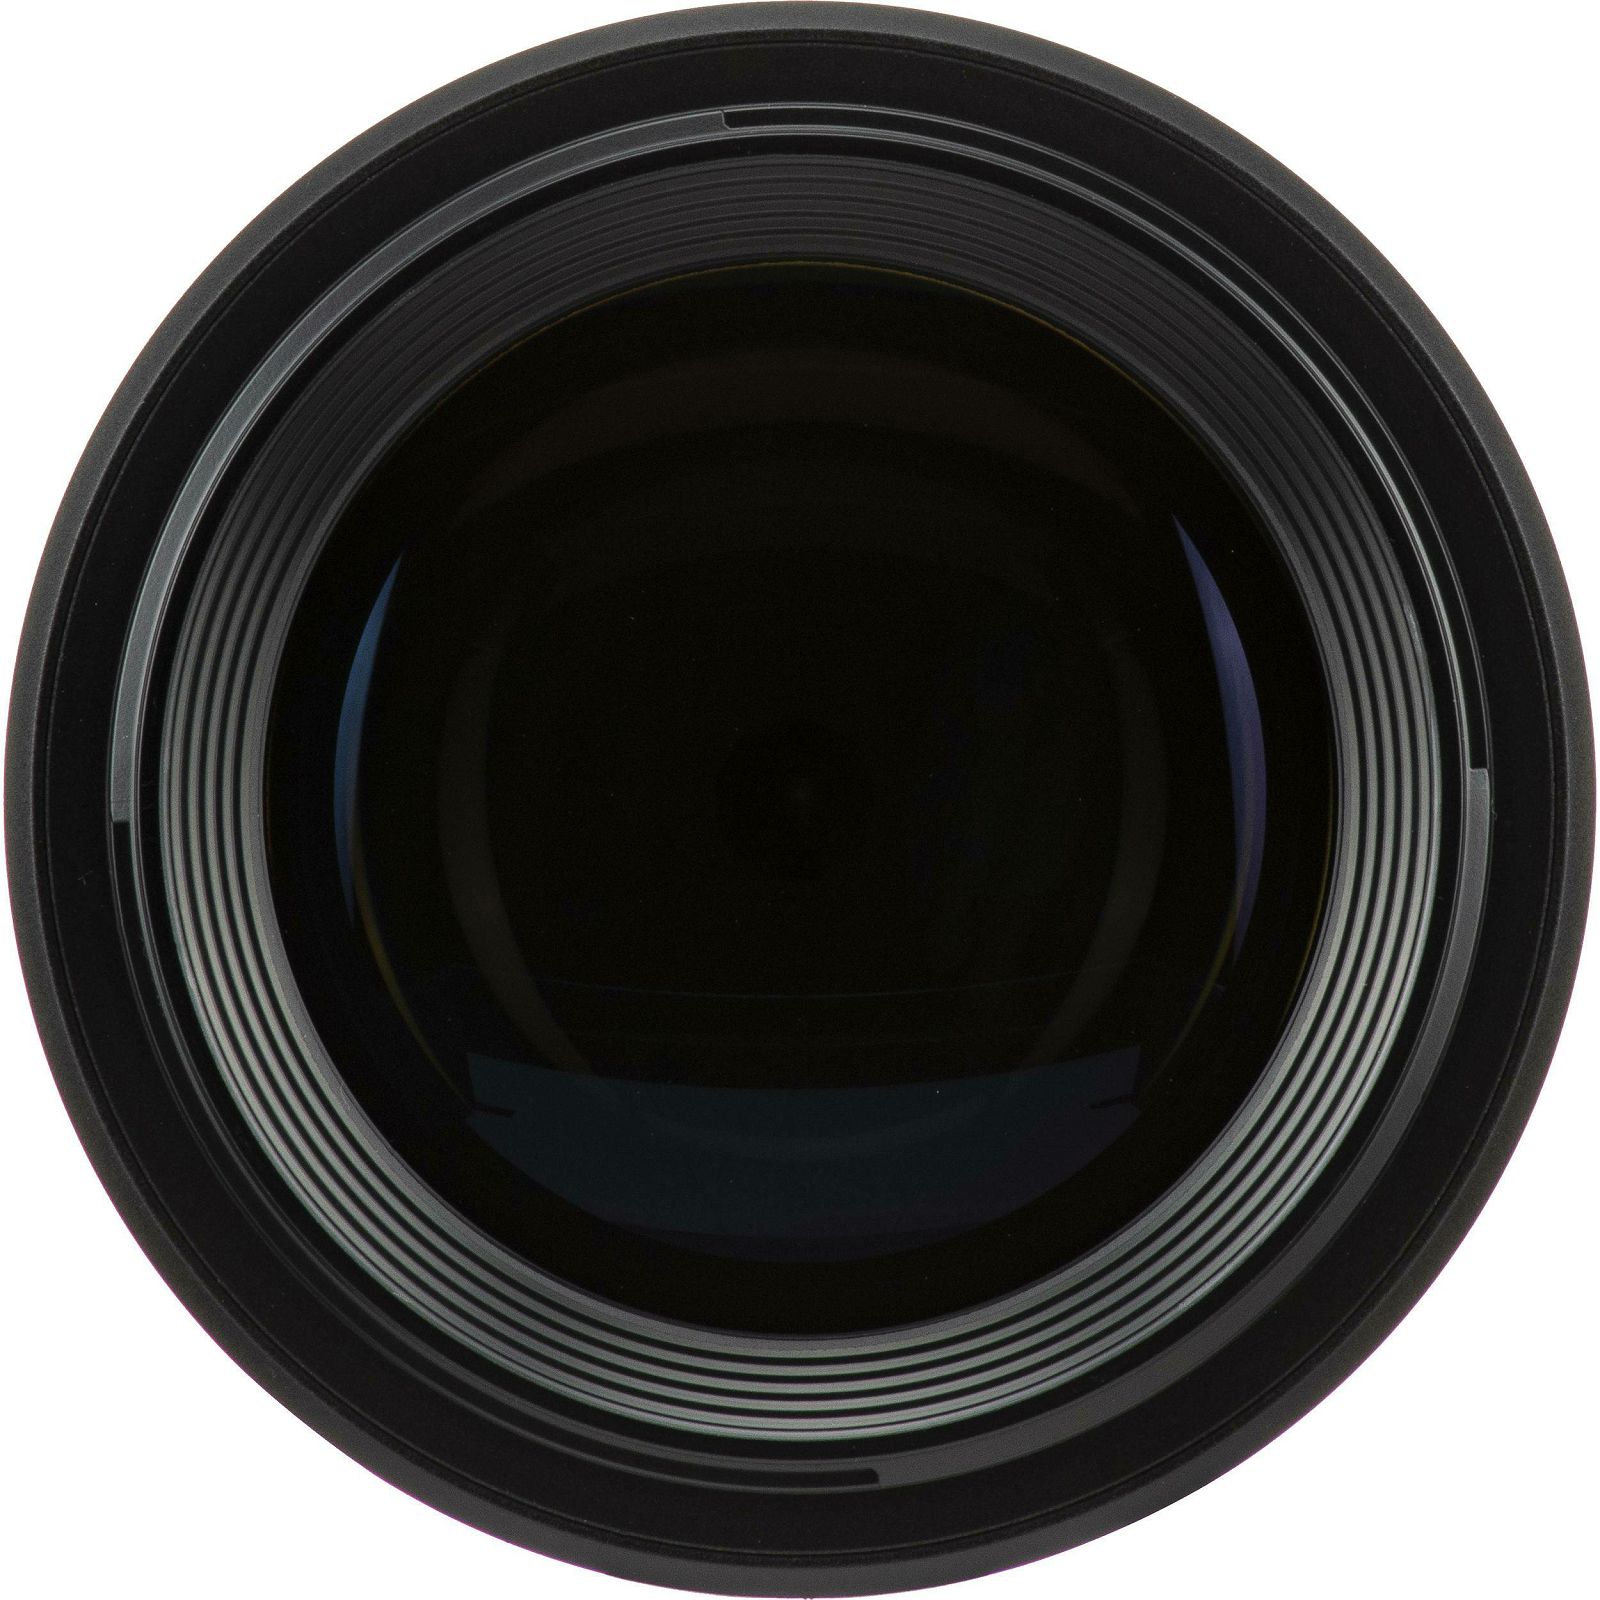 Canon RF 85mm f/1.2 L USM portretni telefoto objektiv 1:1,2 f/1.2L 85 1.2 (3447C005AA)